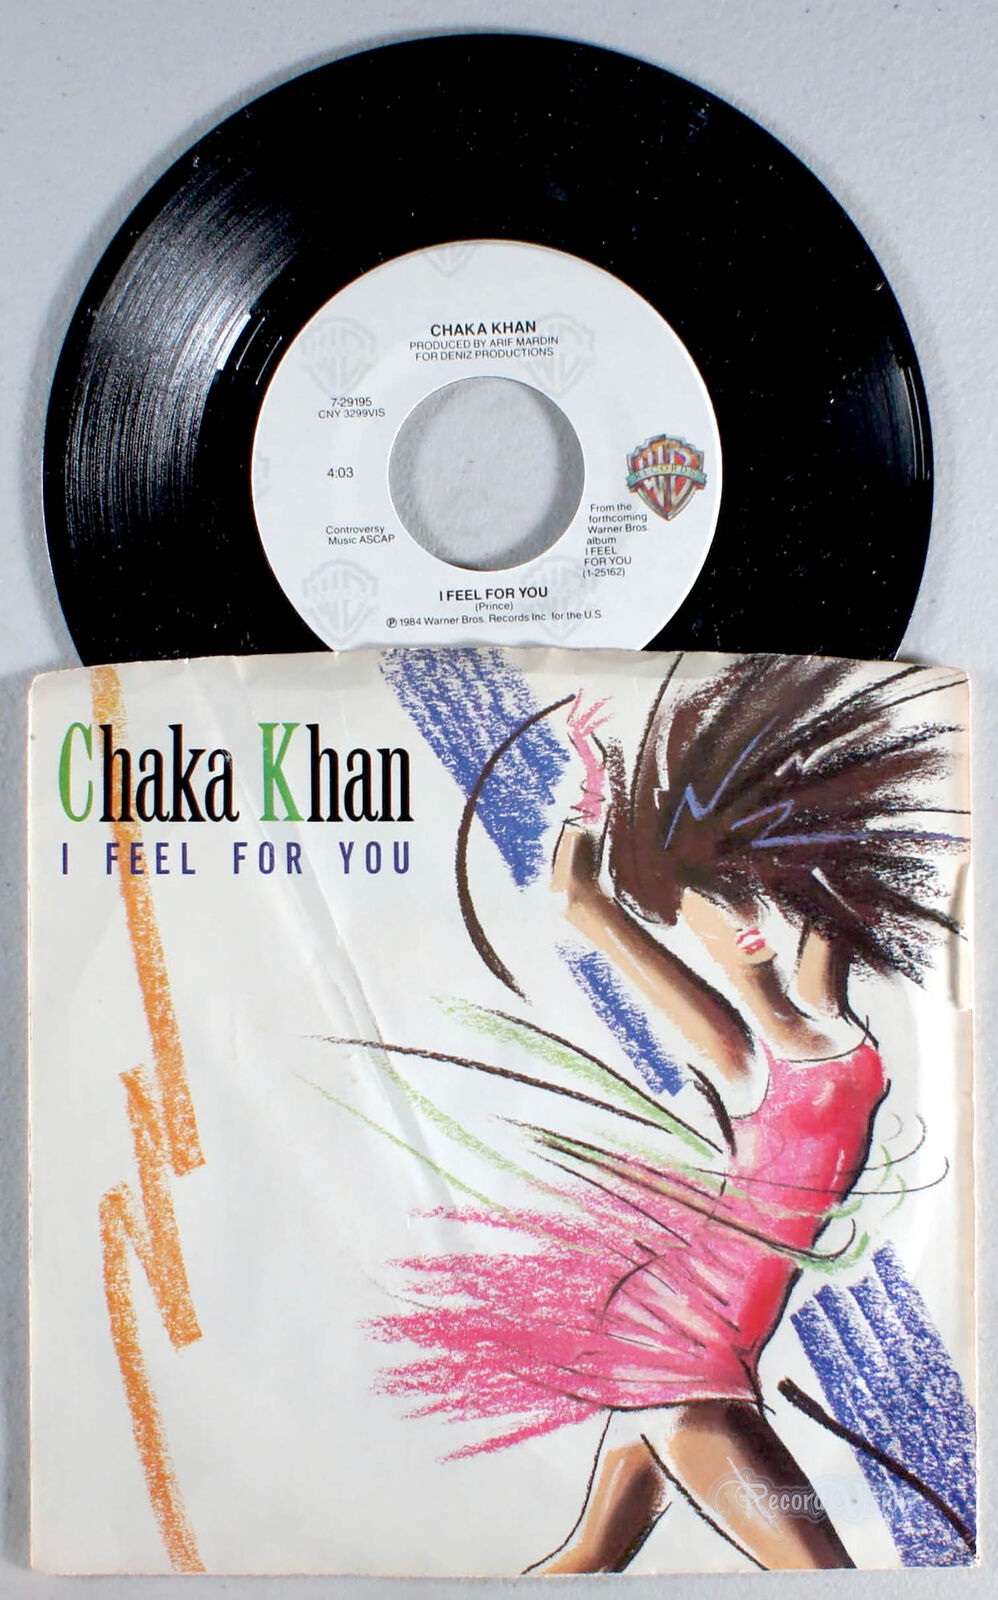 Chaka Khan - I Feel For You (7" Single) (1984) Vinyl 45 • Prince, Stevie Wonder